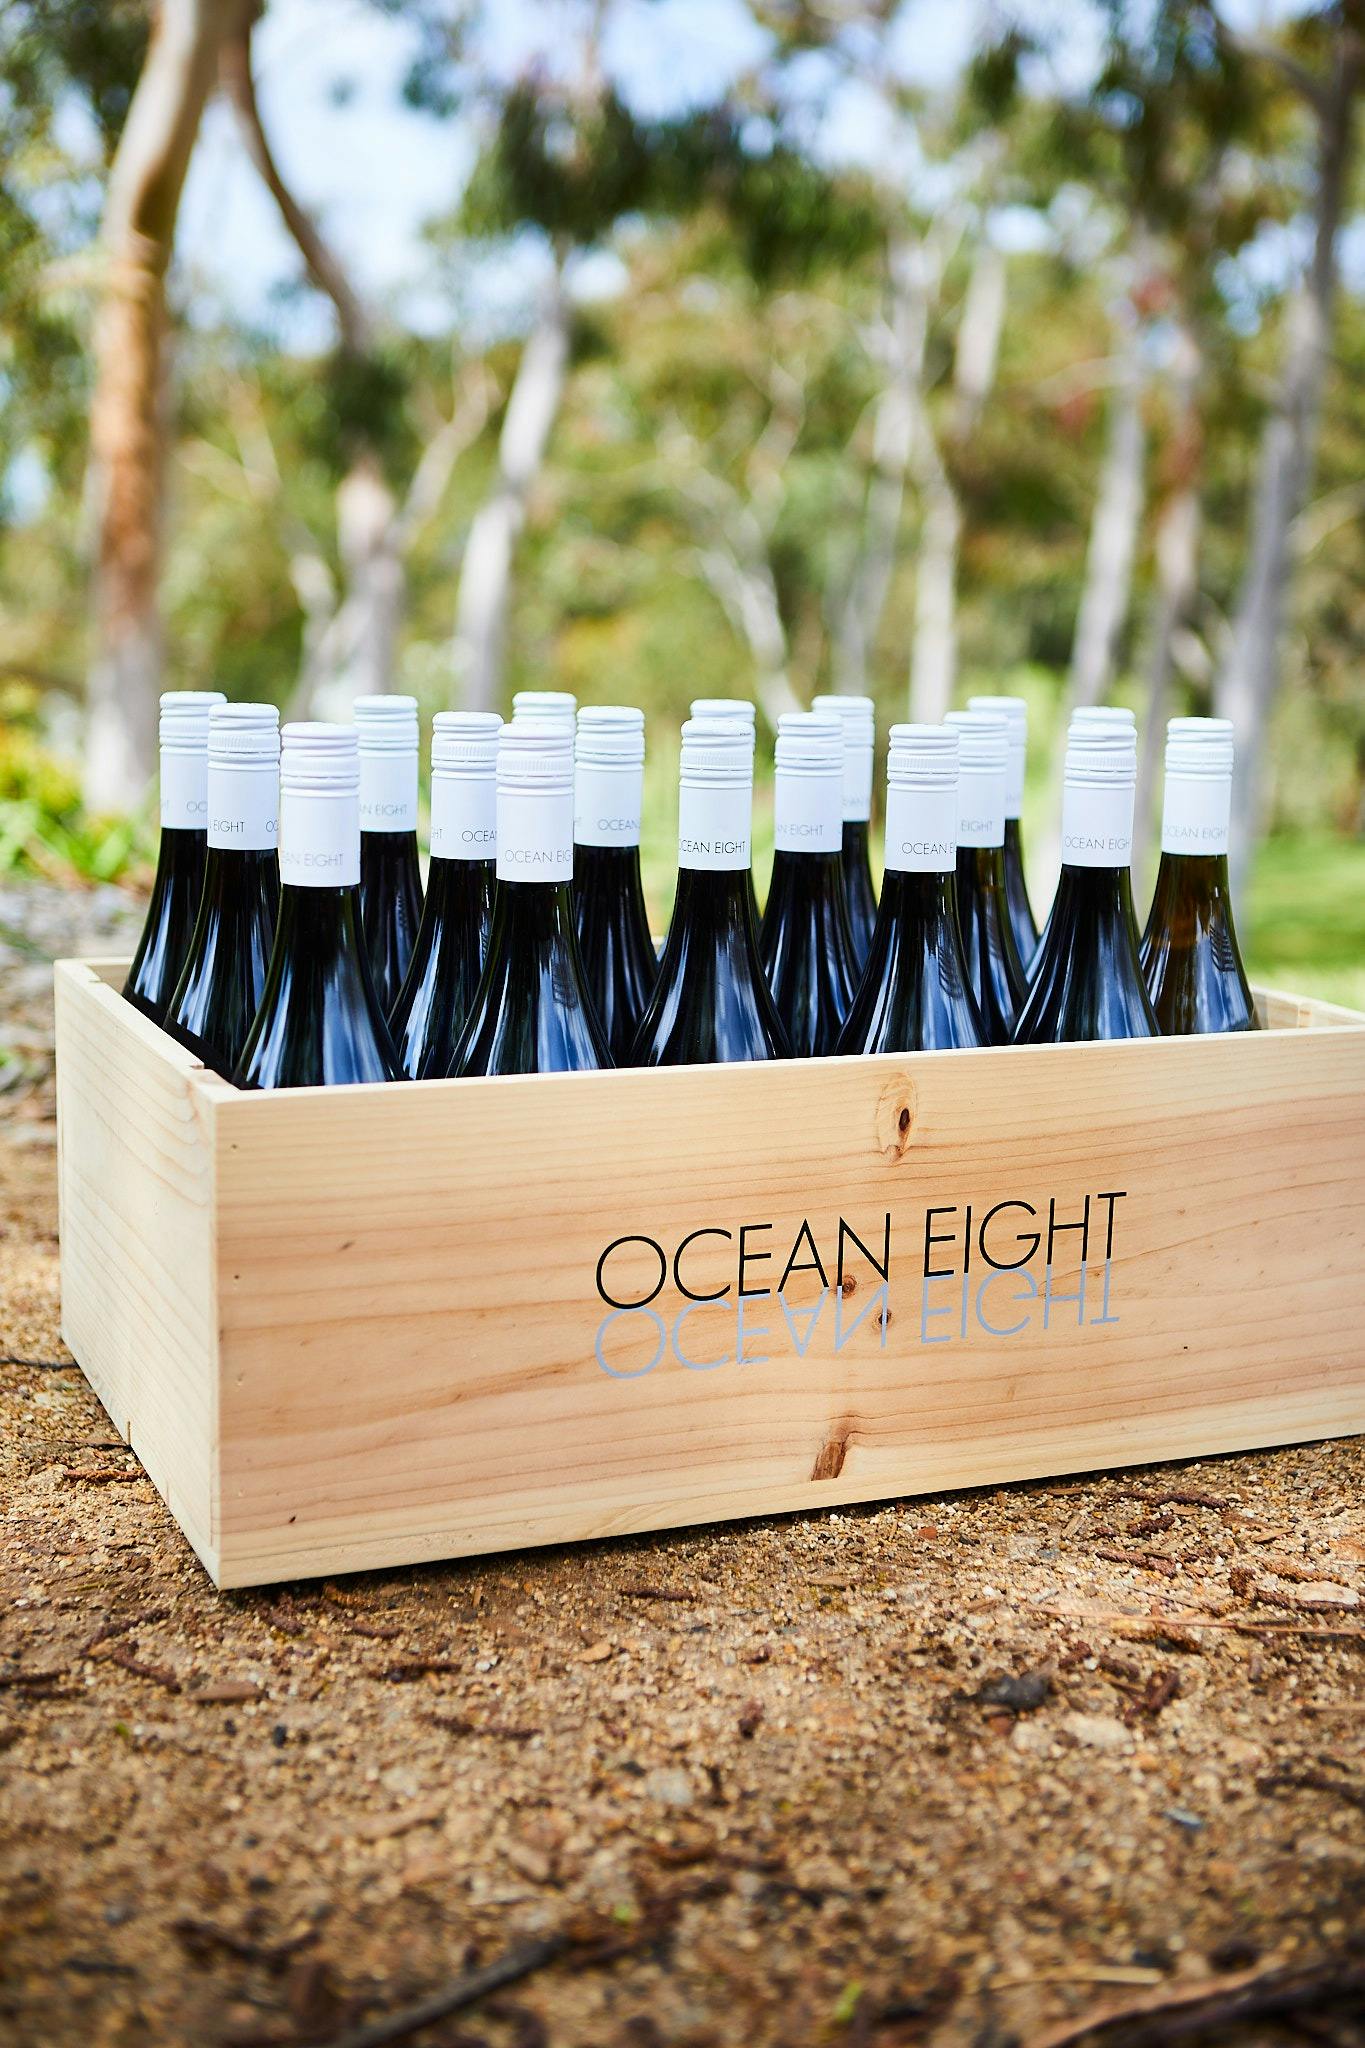 Ocean Eight Vineyard and Winery